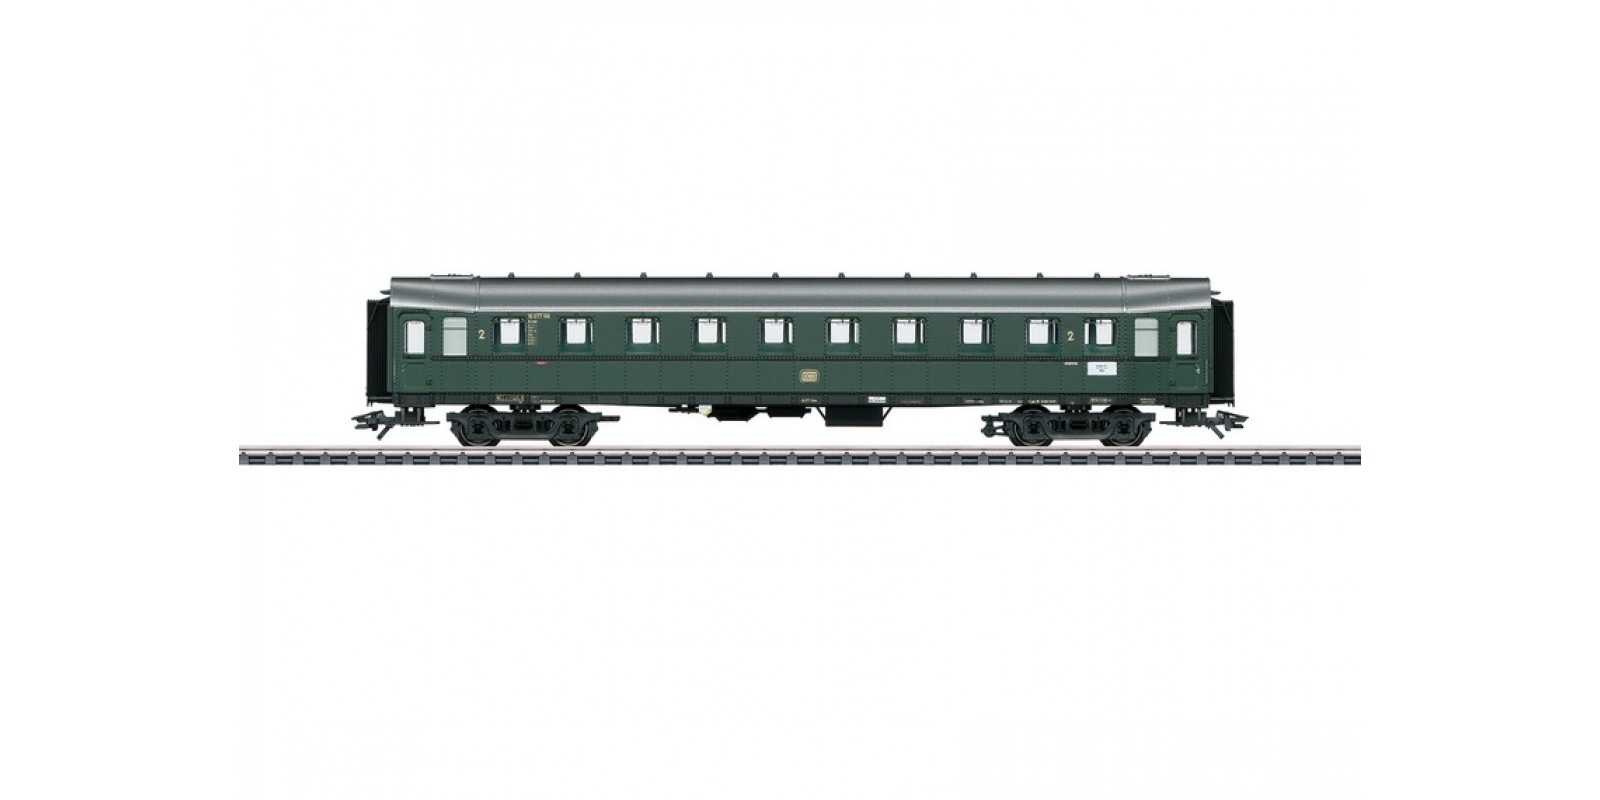 42254 "Hecht" / "Pike" Express Train Passenger Car, 2nd Class